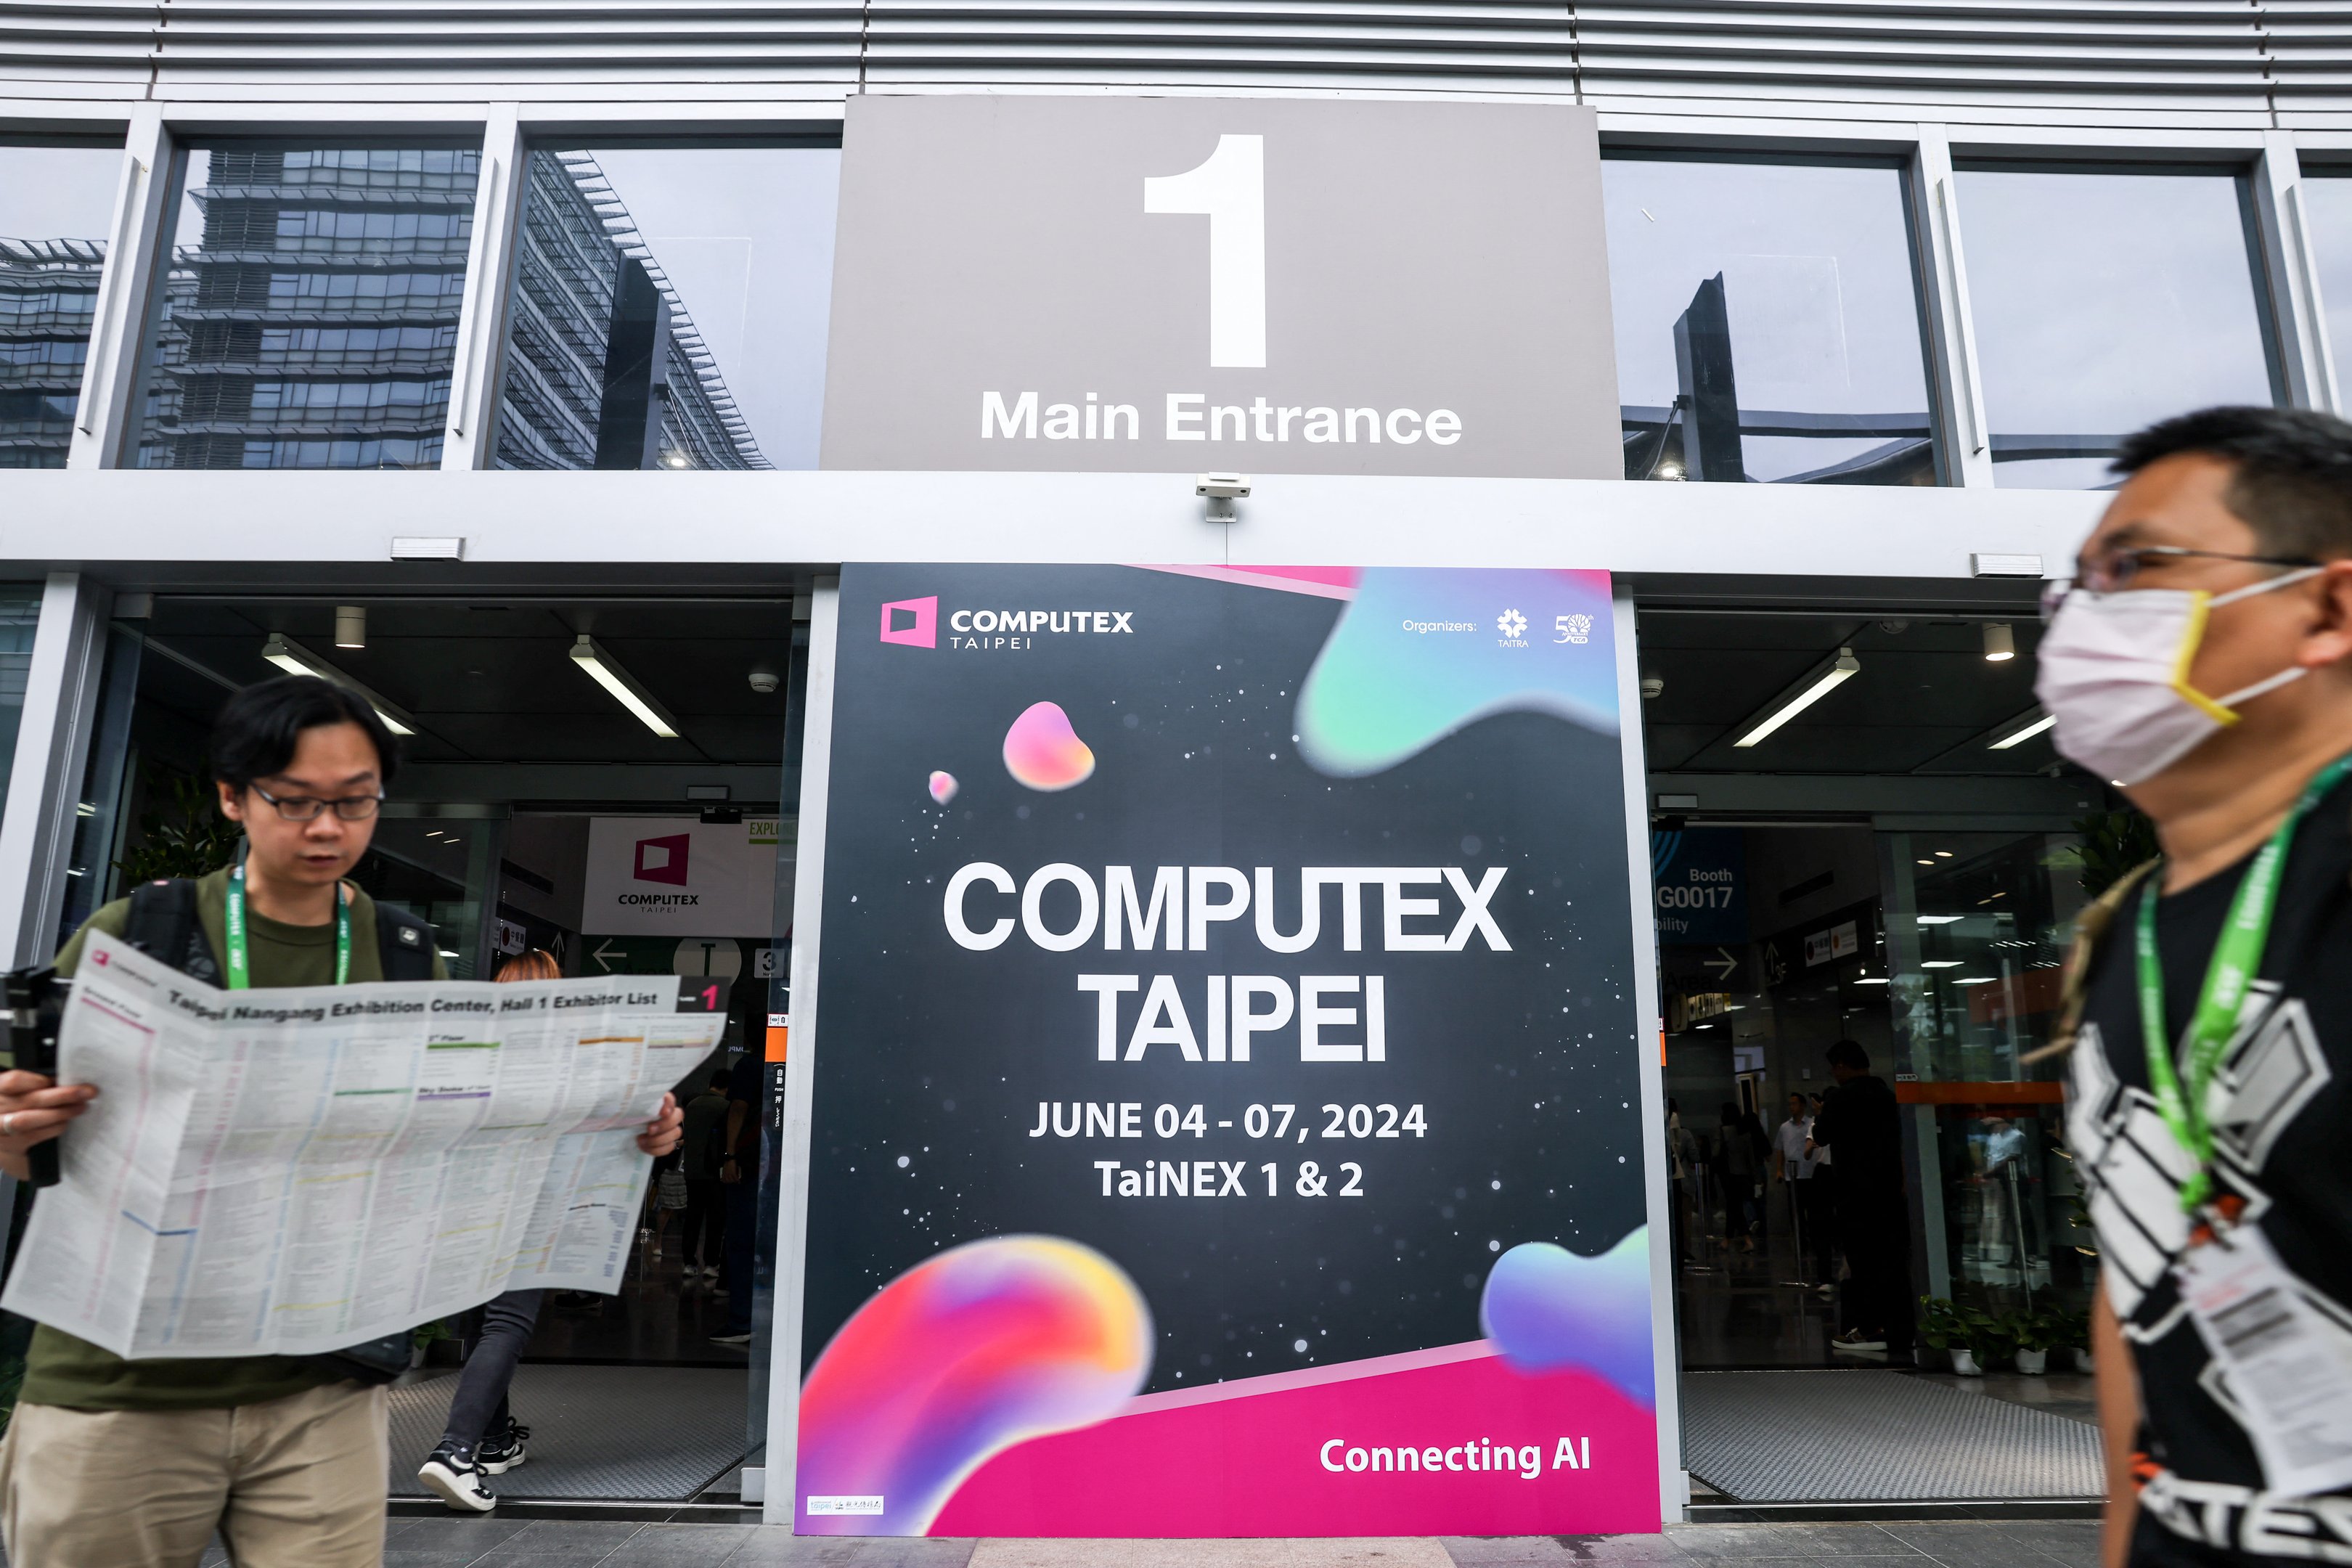 Realizada em Taipei, Taiwan, a Computex é uma das maiores feiras de hardware de informática do mundo, com mais de 1.600 expositores e 40.000 visitantes internacionais, destacando inovações em hardware de PC e IoT.